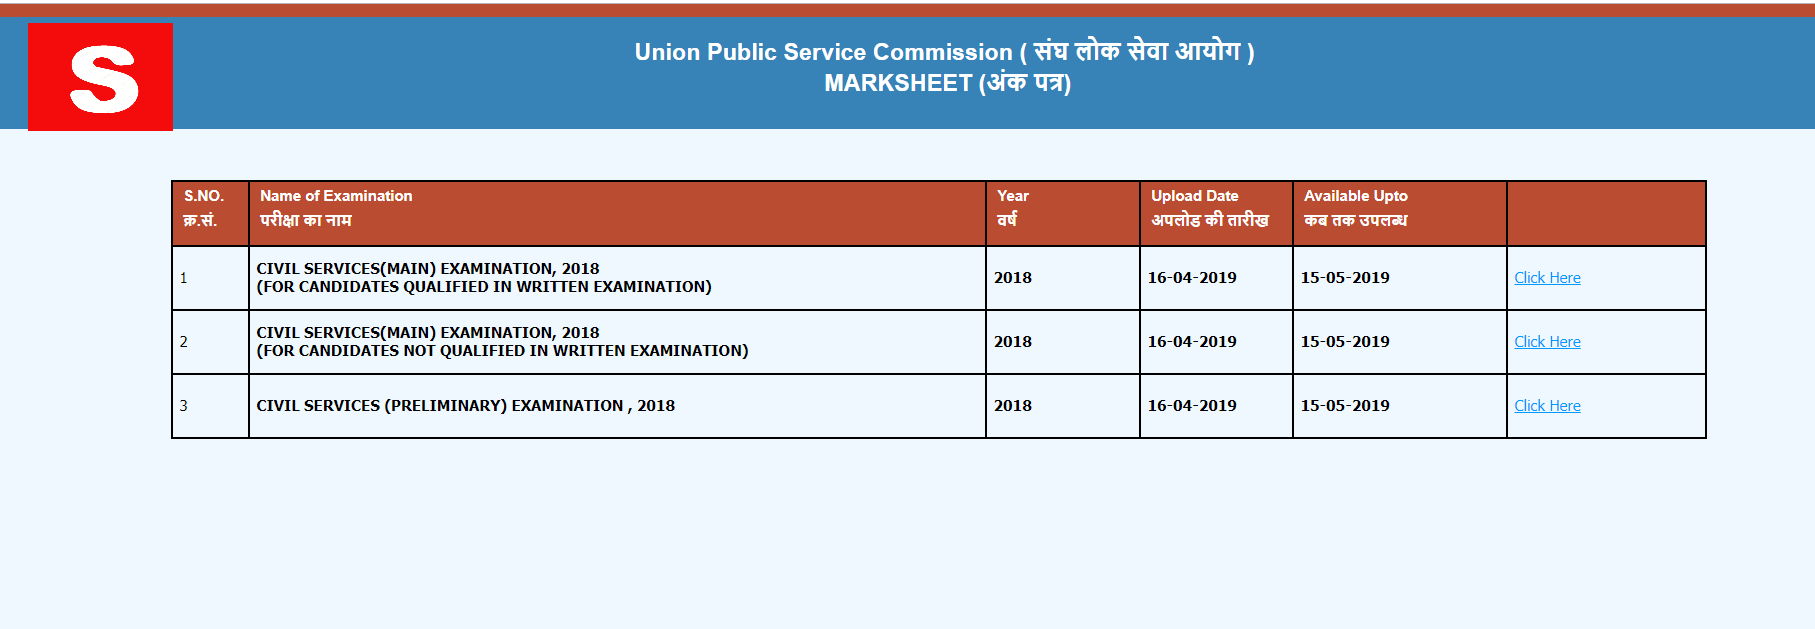 UPSC Mark Sheet 2018